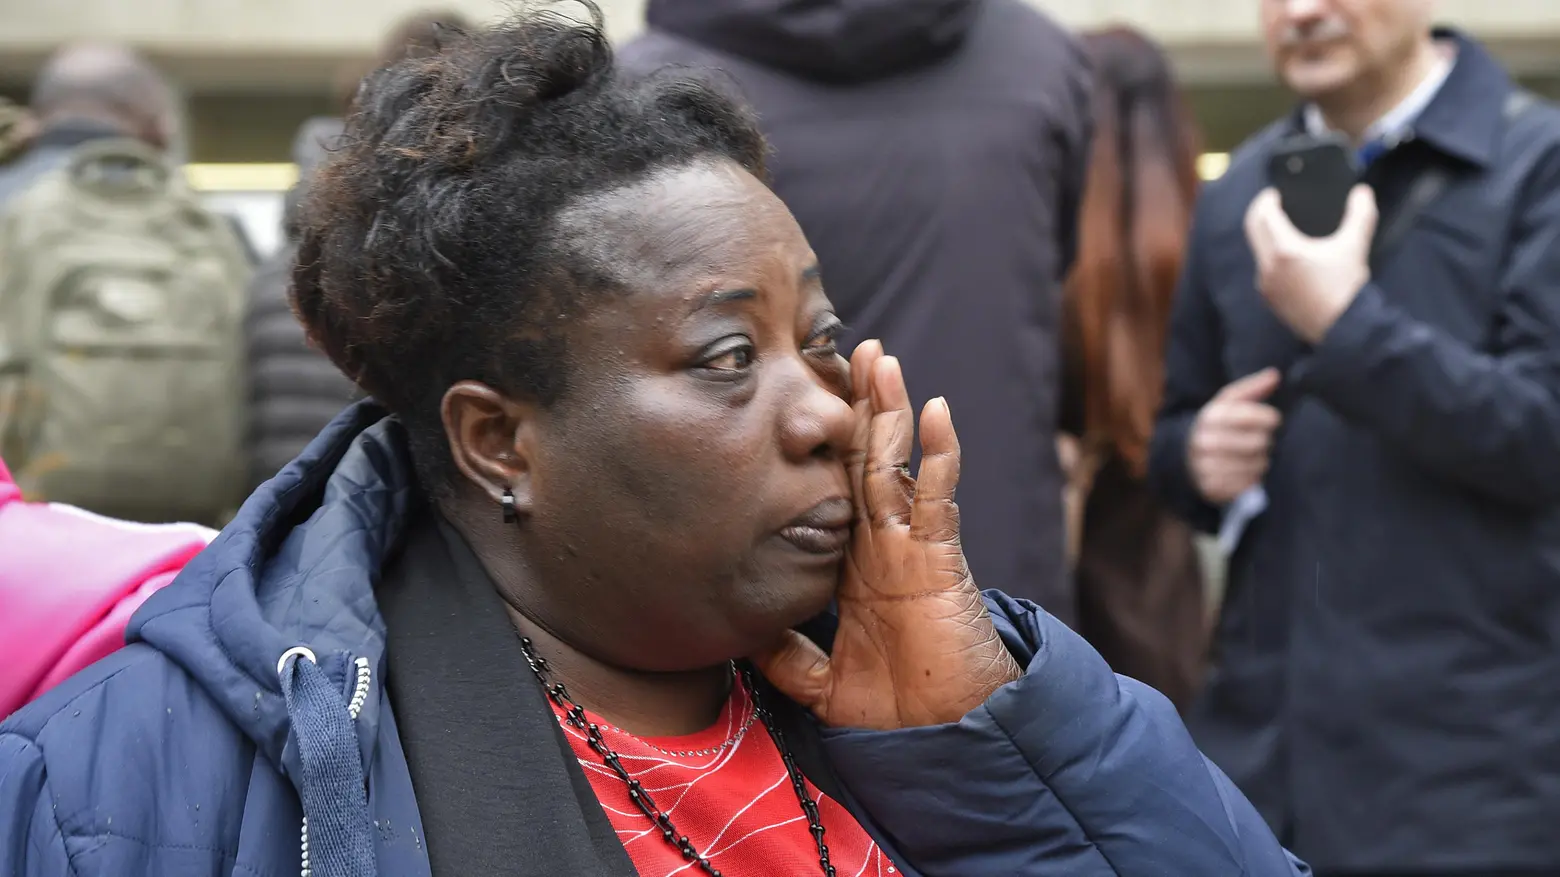 Le lacrime della vedova in tribunale  "Dio ti giudicherà, voglio giustizia"